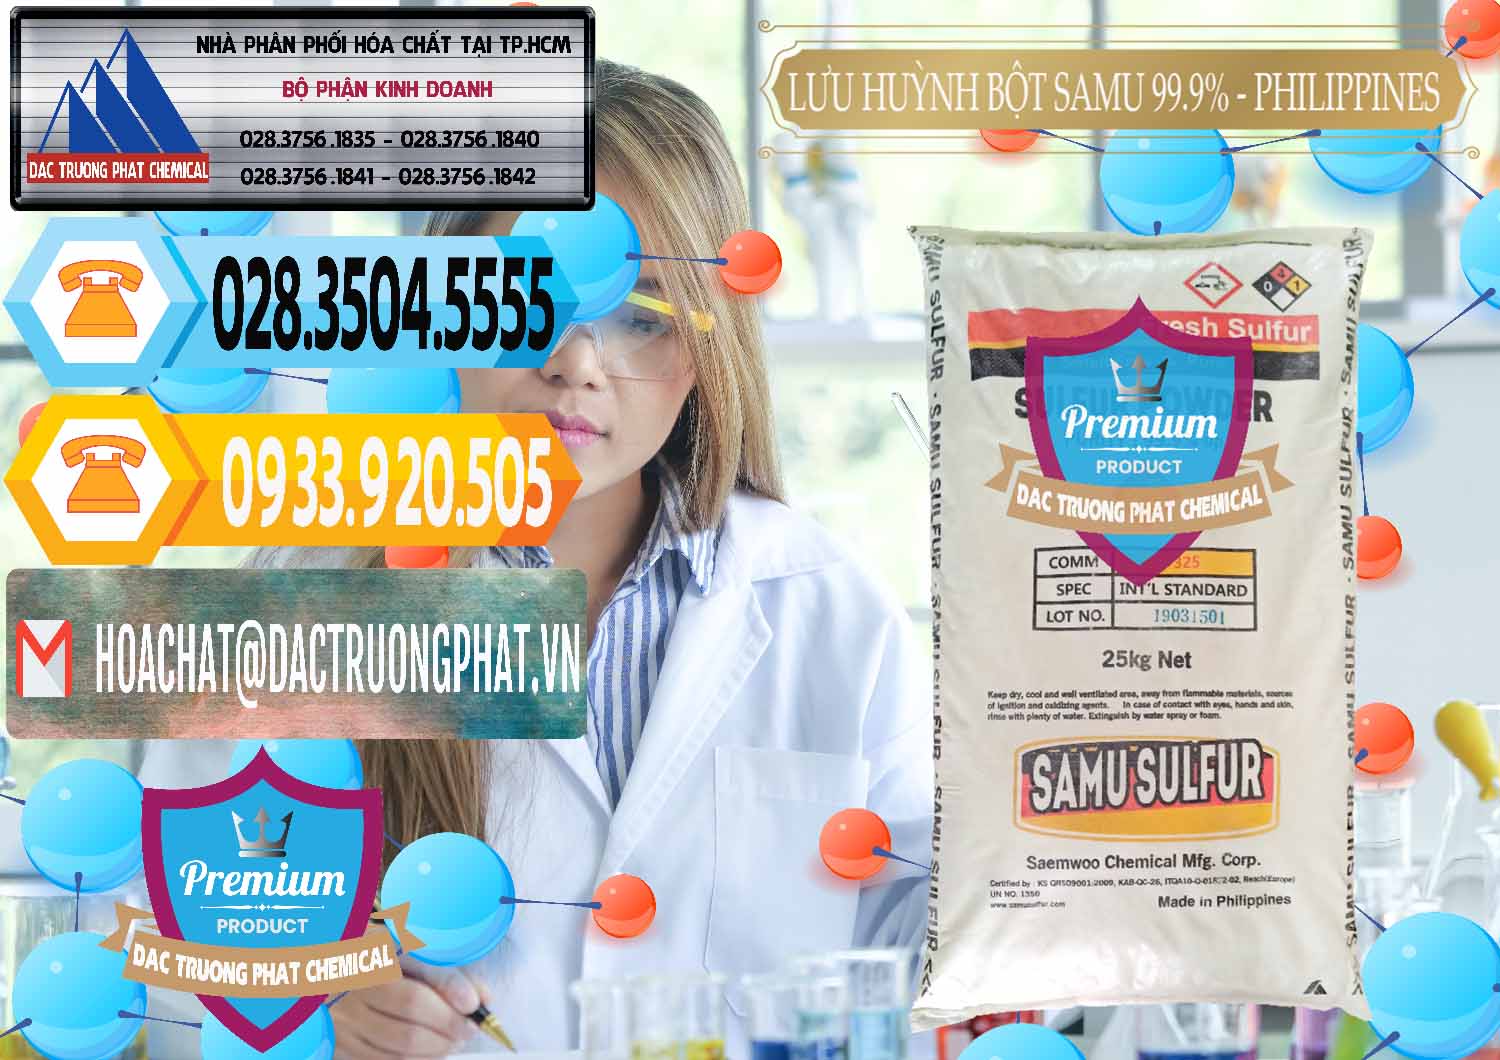 Đơn vị chuyên bán ( cung ứng ) Lưu huỳnh Bột - Sulfur Powder Samu Philippines - 0201 - Cty phân phối & kinh doanh hóa chất tại TP.HCM - hoachattayrua.net